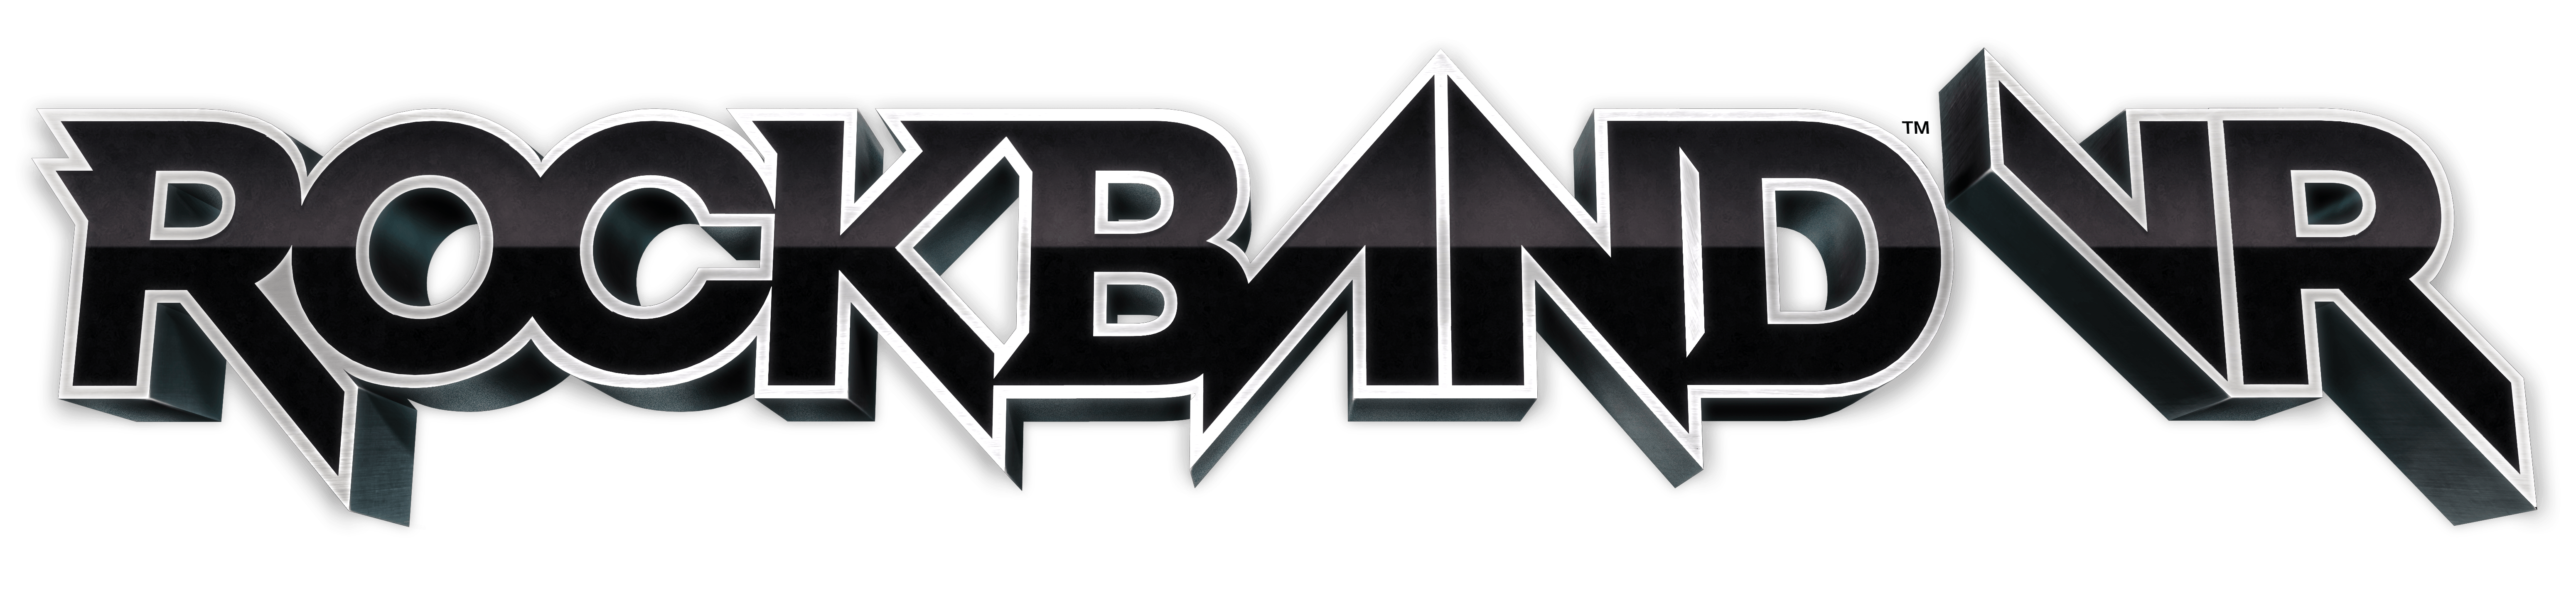 Rock Band Game Logo